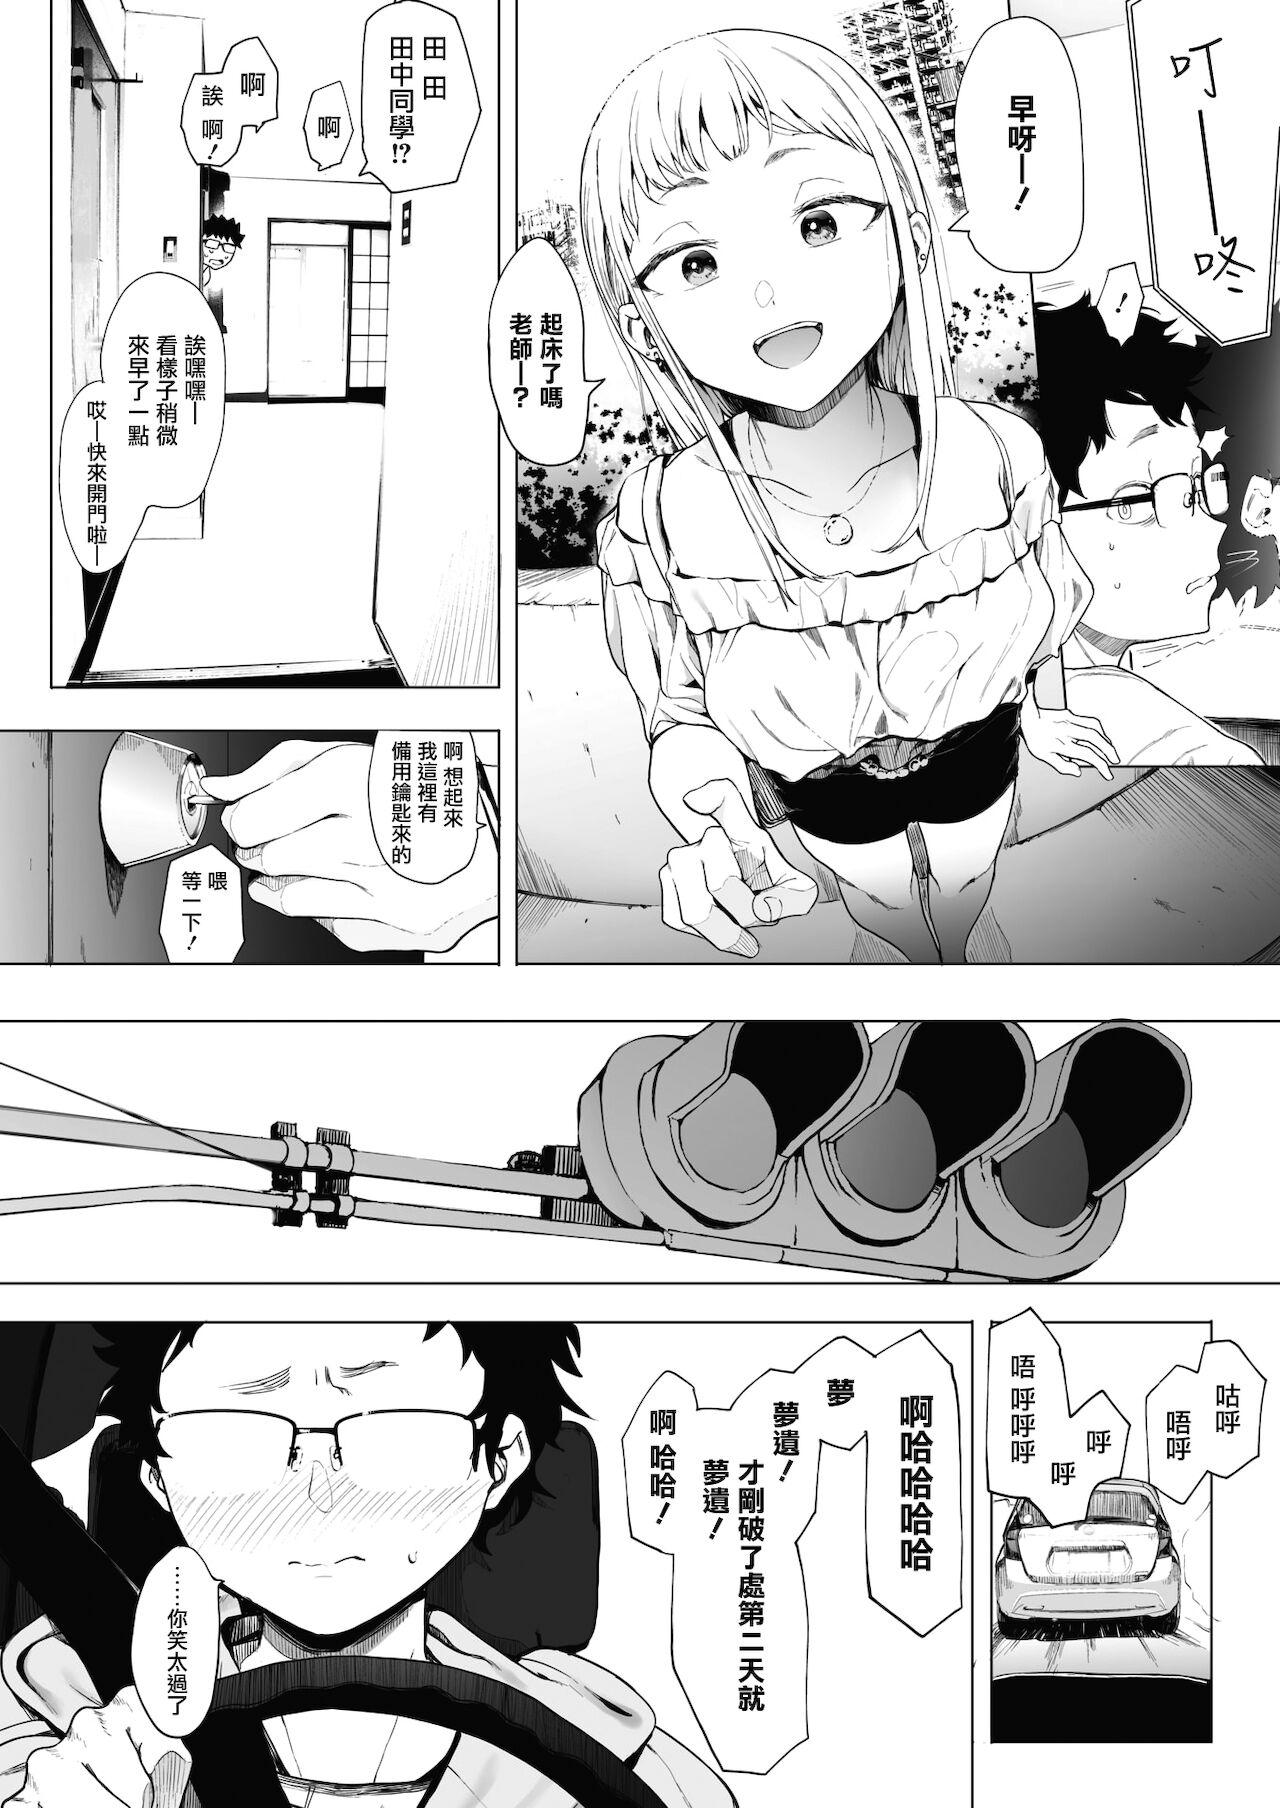 EIGHTMANsensei no okage de Kanojo ga dekimashita! 2 | I Got a Girlfriend with Eightman-sensei's Help! 2 3